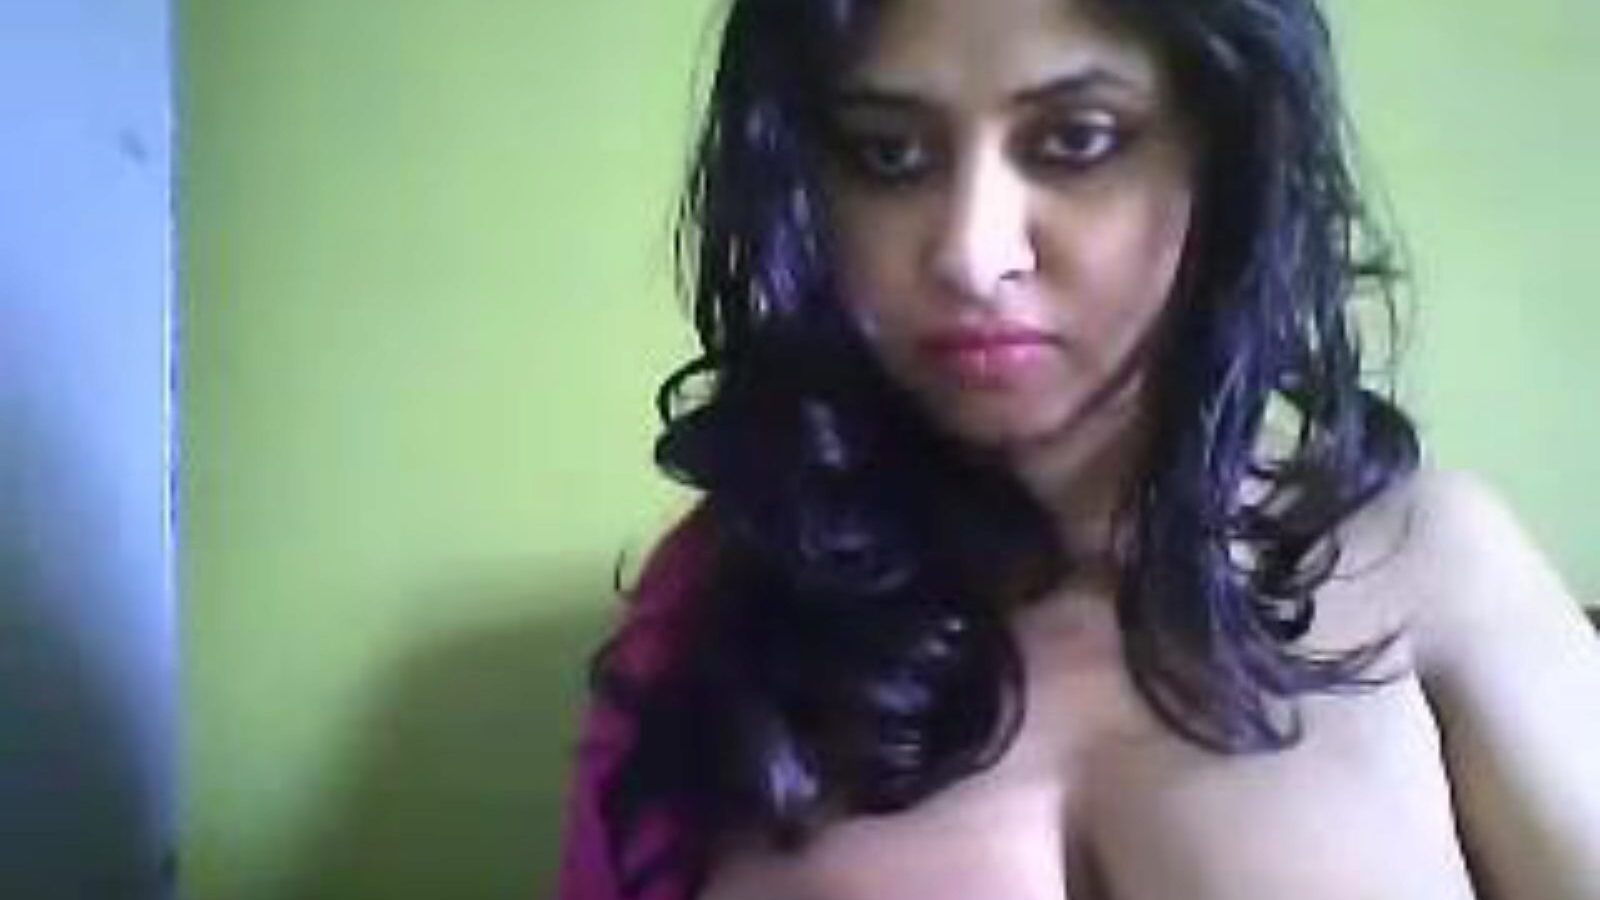 desi hot cam mère je voudrais baiser deepa, porno indien gratuit 27: xhamster regarder desi hot cam mère je voudrais baiser deepa épisode sur xhamster, le plus grand site Web de tubes de branchement avec des tonnes d'indiens asiatiques gratuits pour tous & xxx vidéos porno chaudes